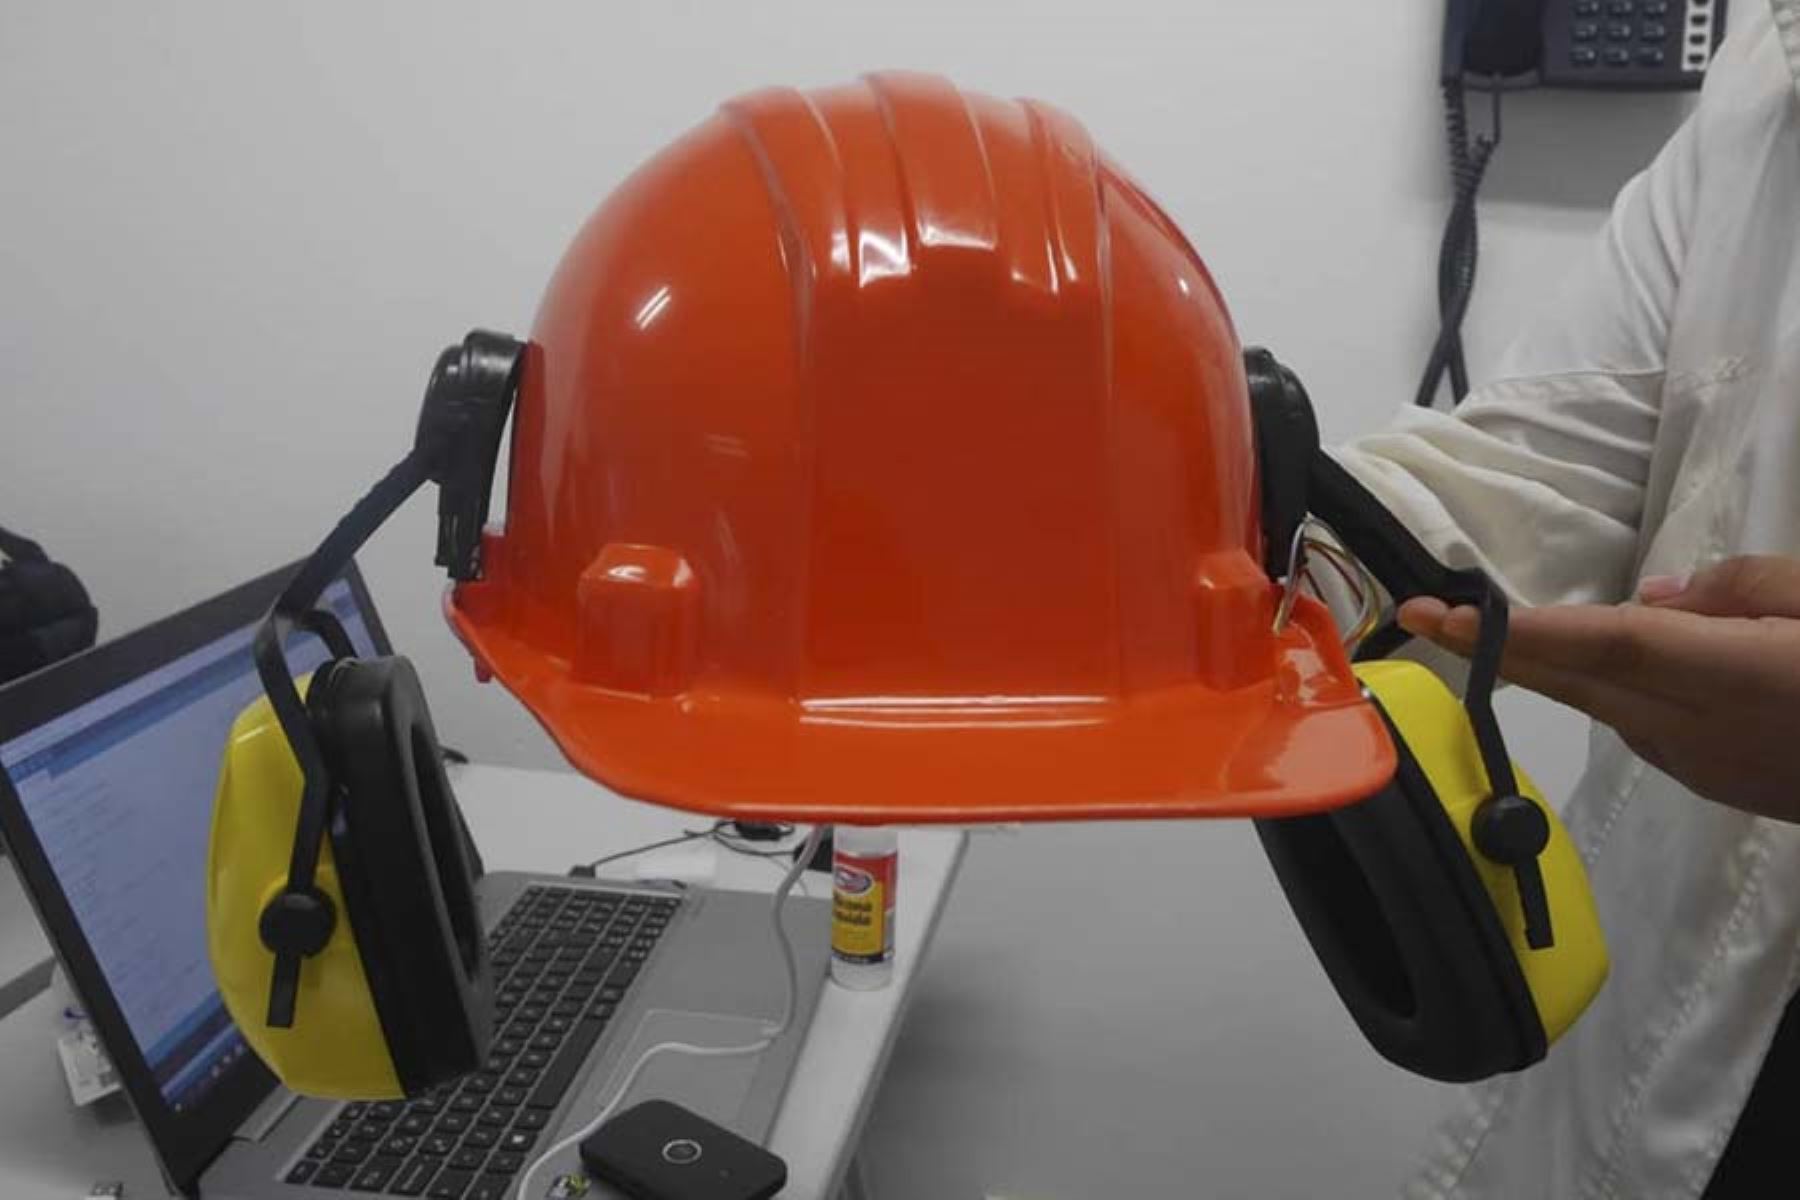 Un grupo de estudiantes diseñó un dispositivo ligero que va adherido al casco de los operarios mineros para reducir los niveles de ruido y recibir alertas ante situaciones de emergencias.